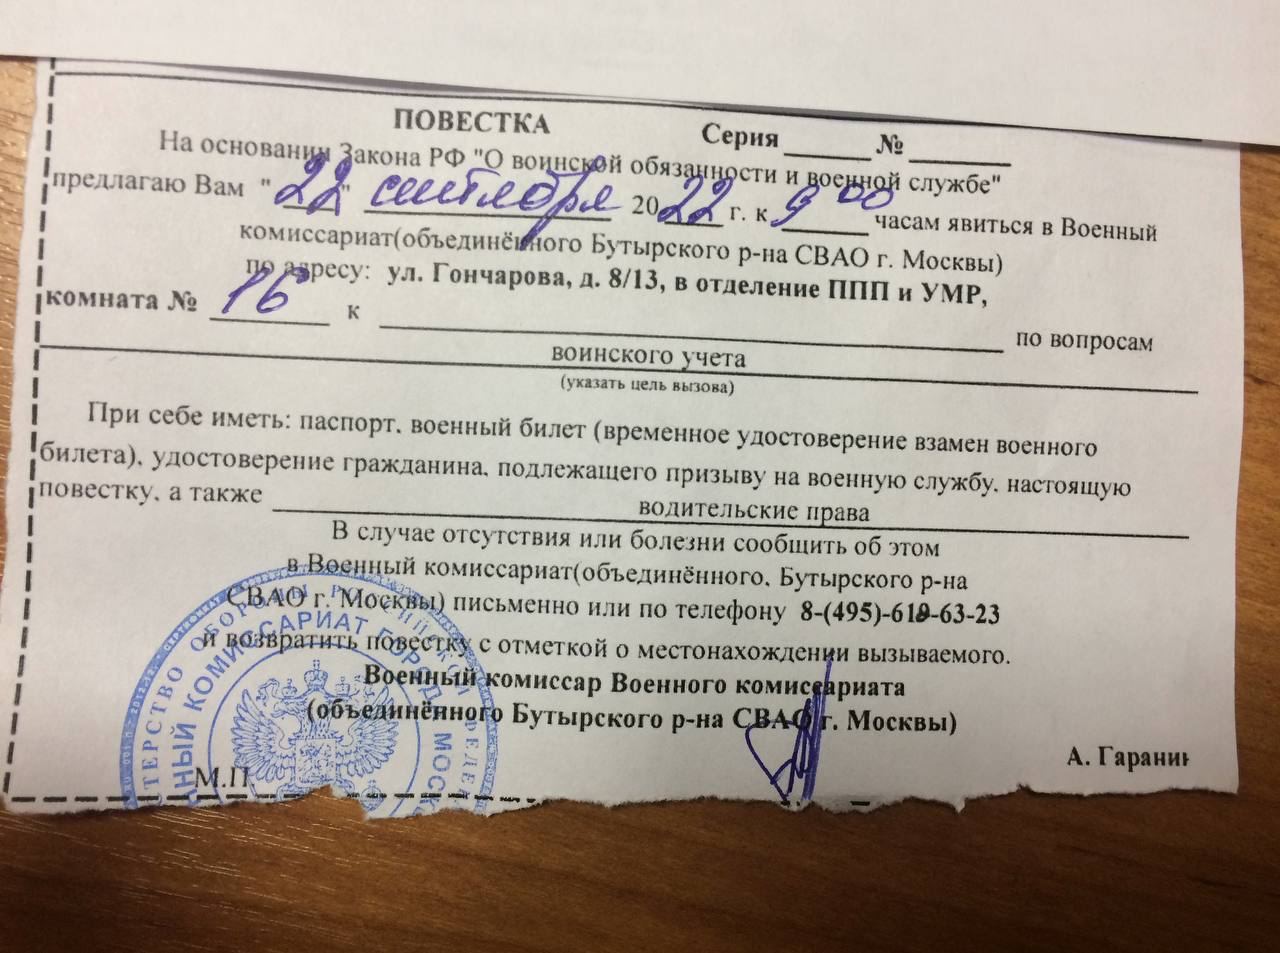 Повестка в военкомат на 22 сентября 2022 года. Фото из телеграм-канала Павла Чикова.